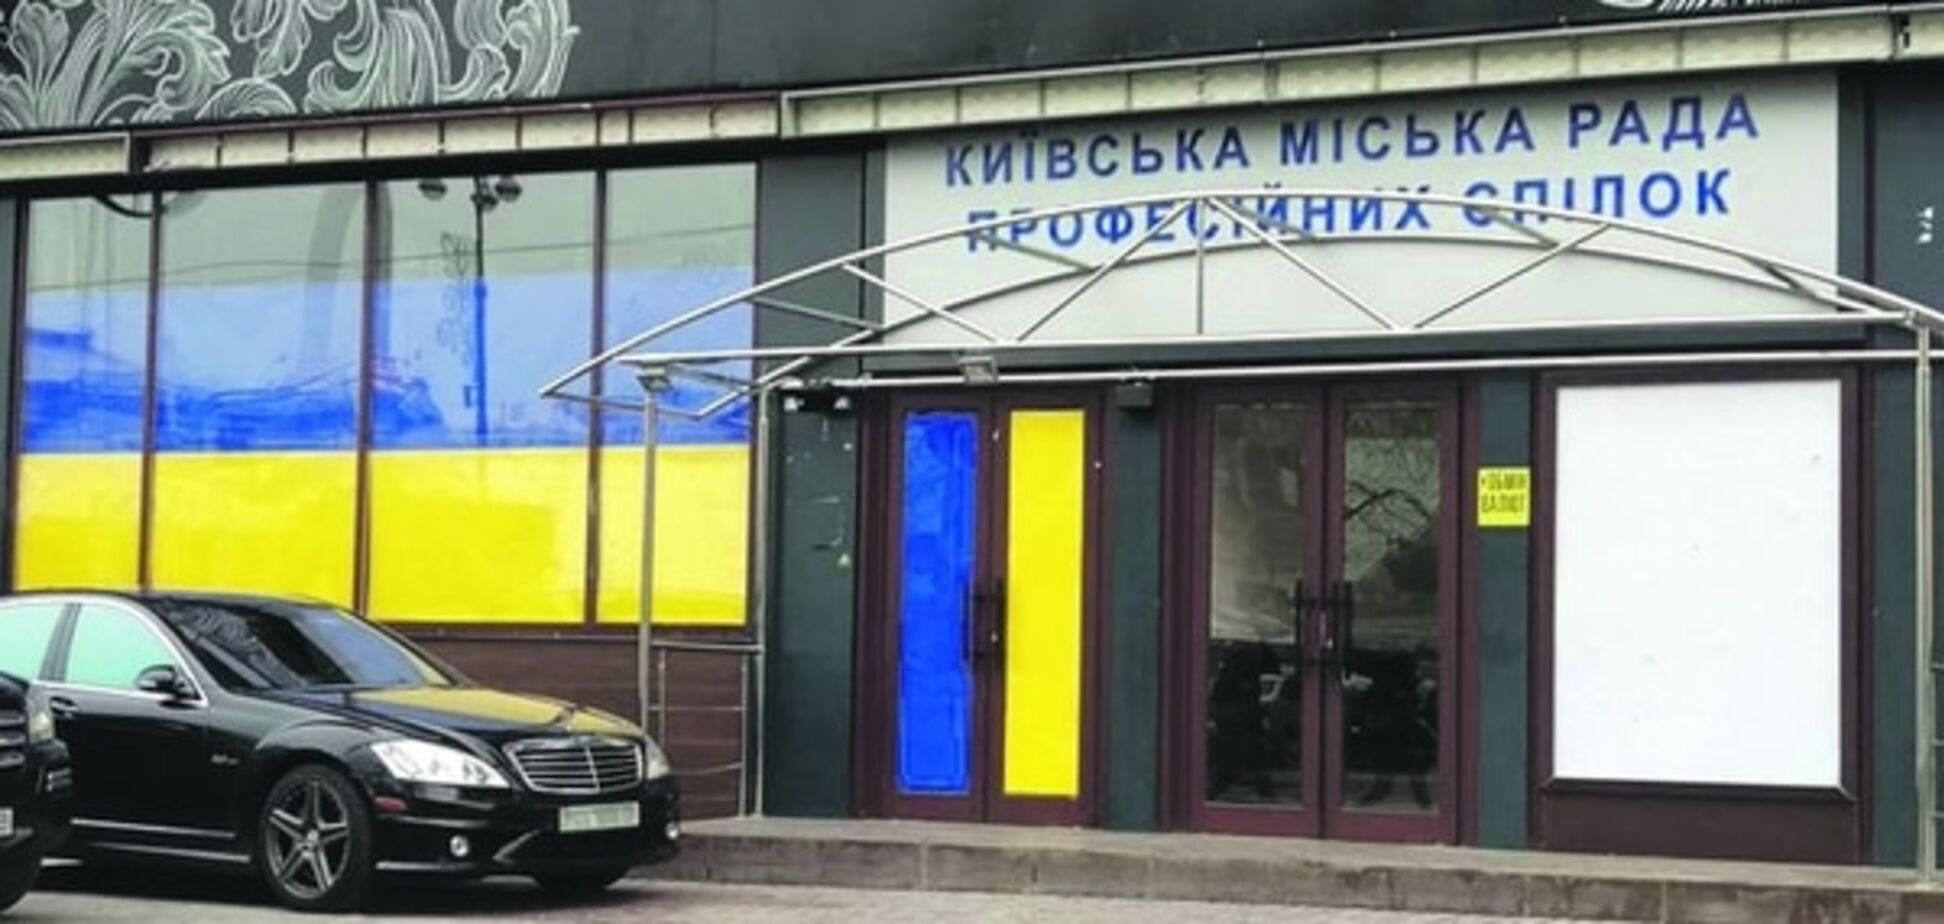 Українська L'Kaffa: скандальне кафе в Києві завісили прапорами. Фотофакт